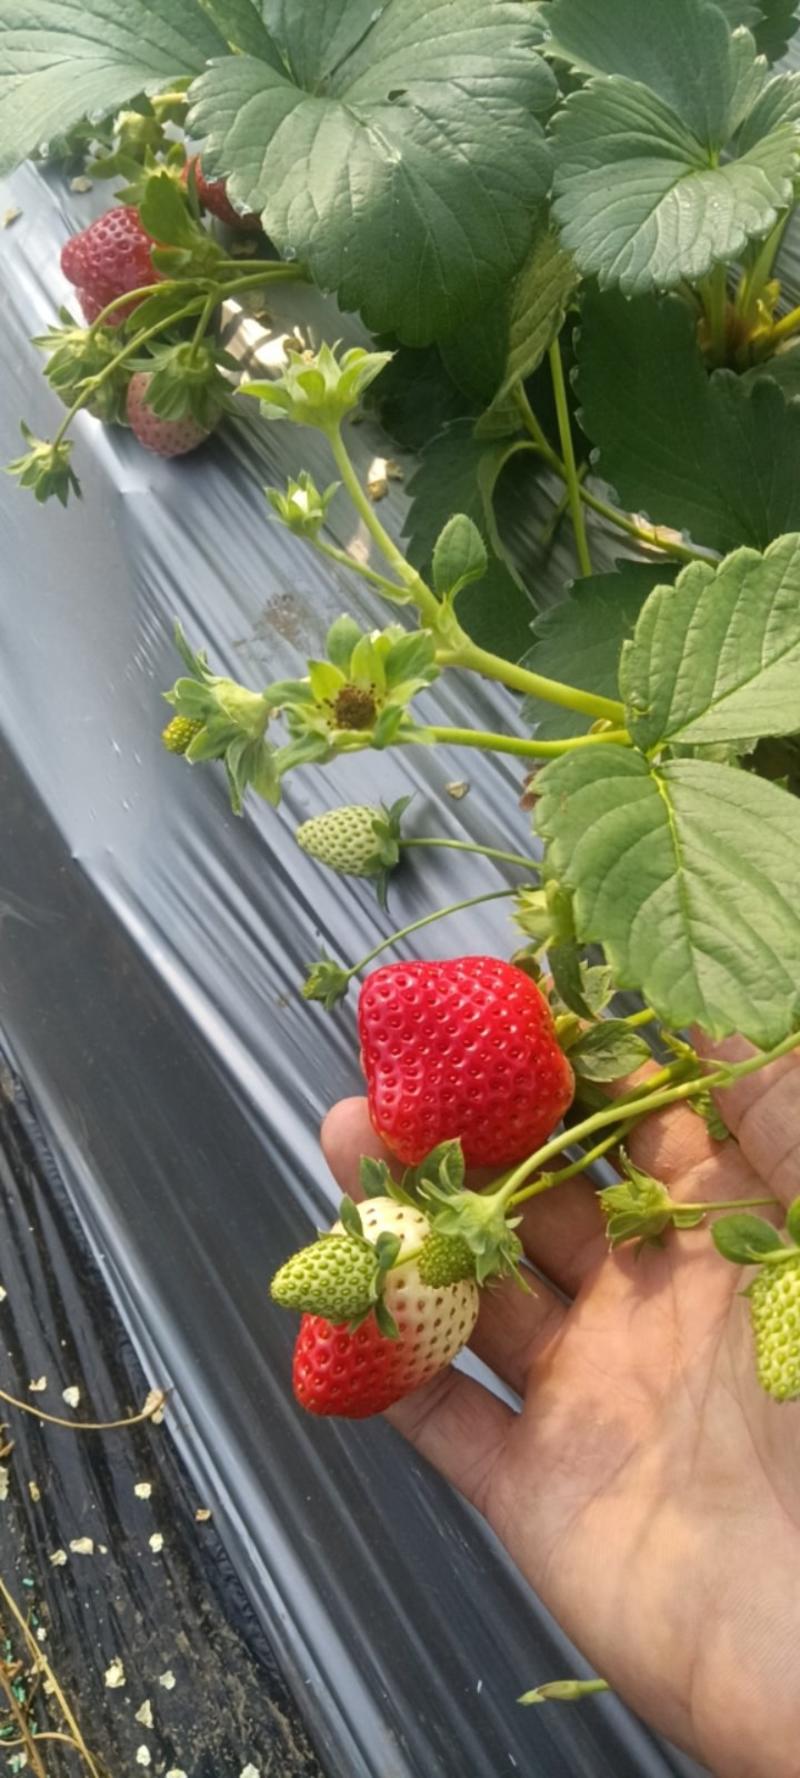 红宝石草莓，红玉草莓，红颜草莓，章姬草莓，香野草莓等